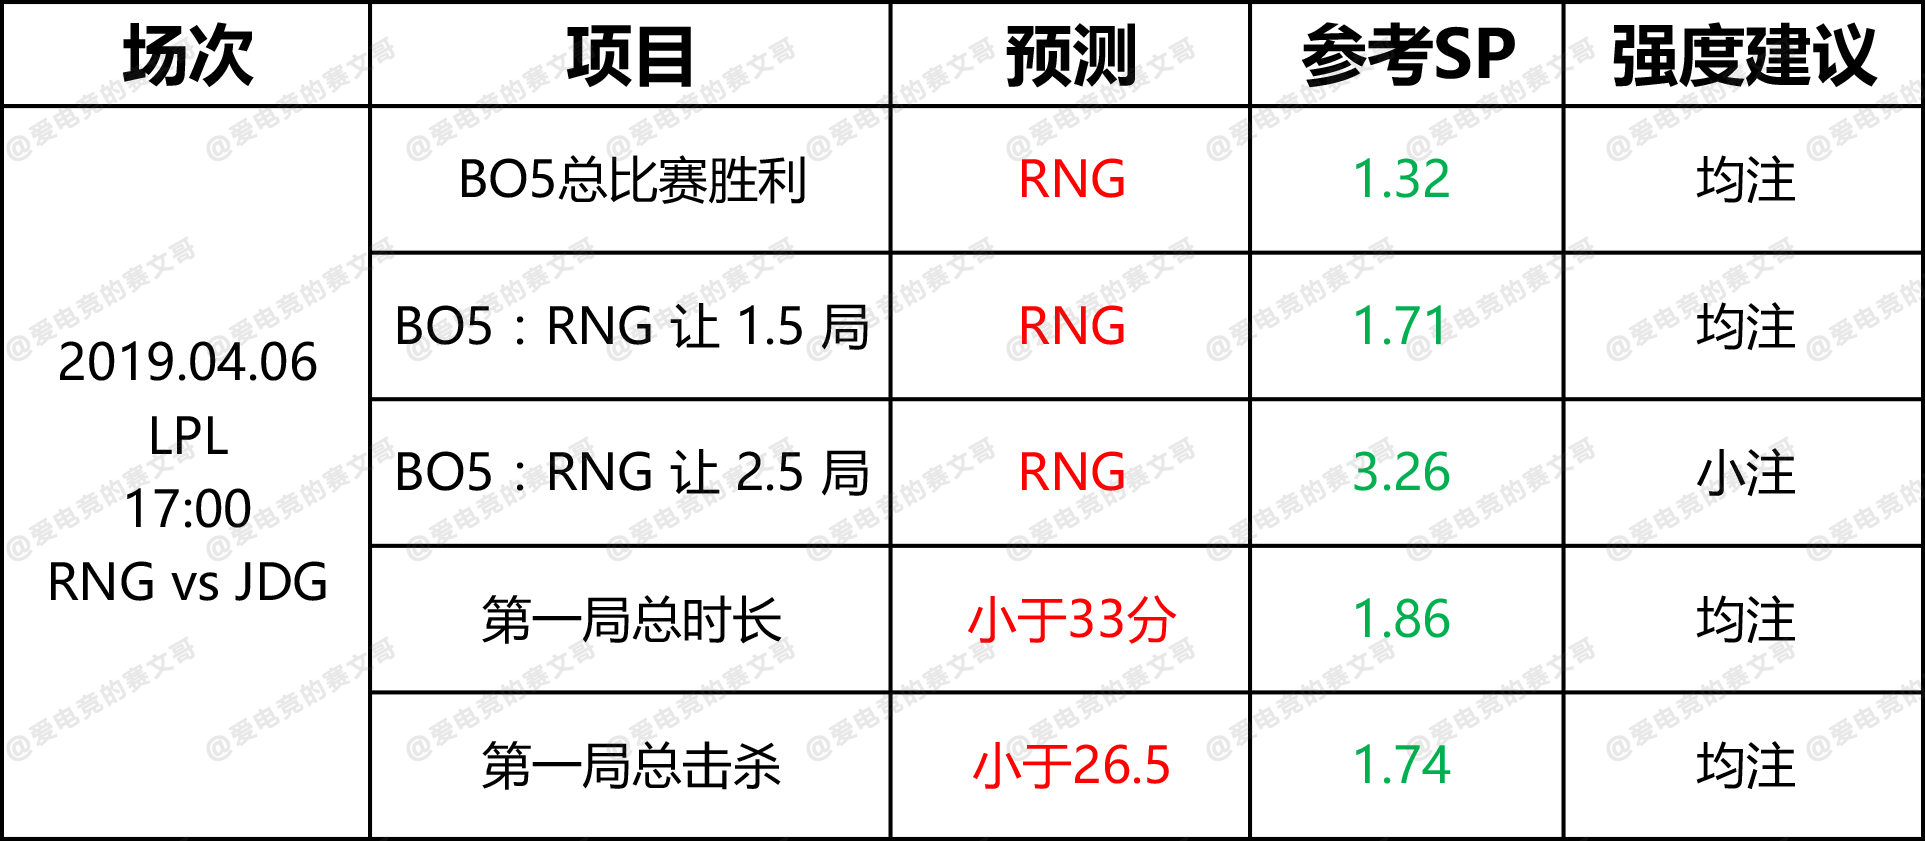 4月6日 DG赛前预测点 RNG vs JDG